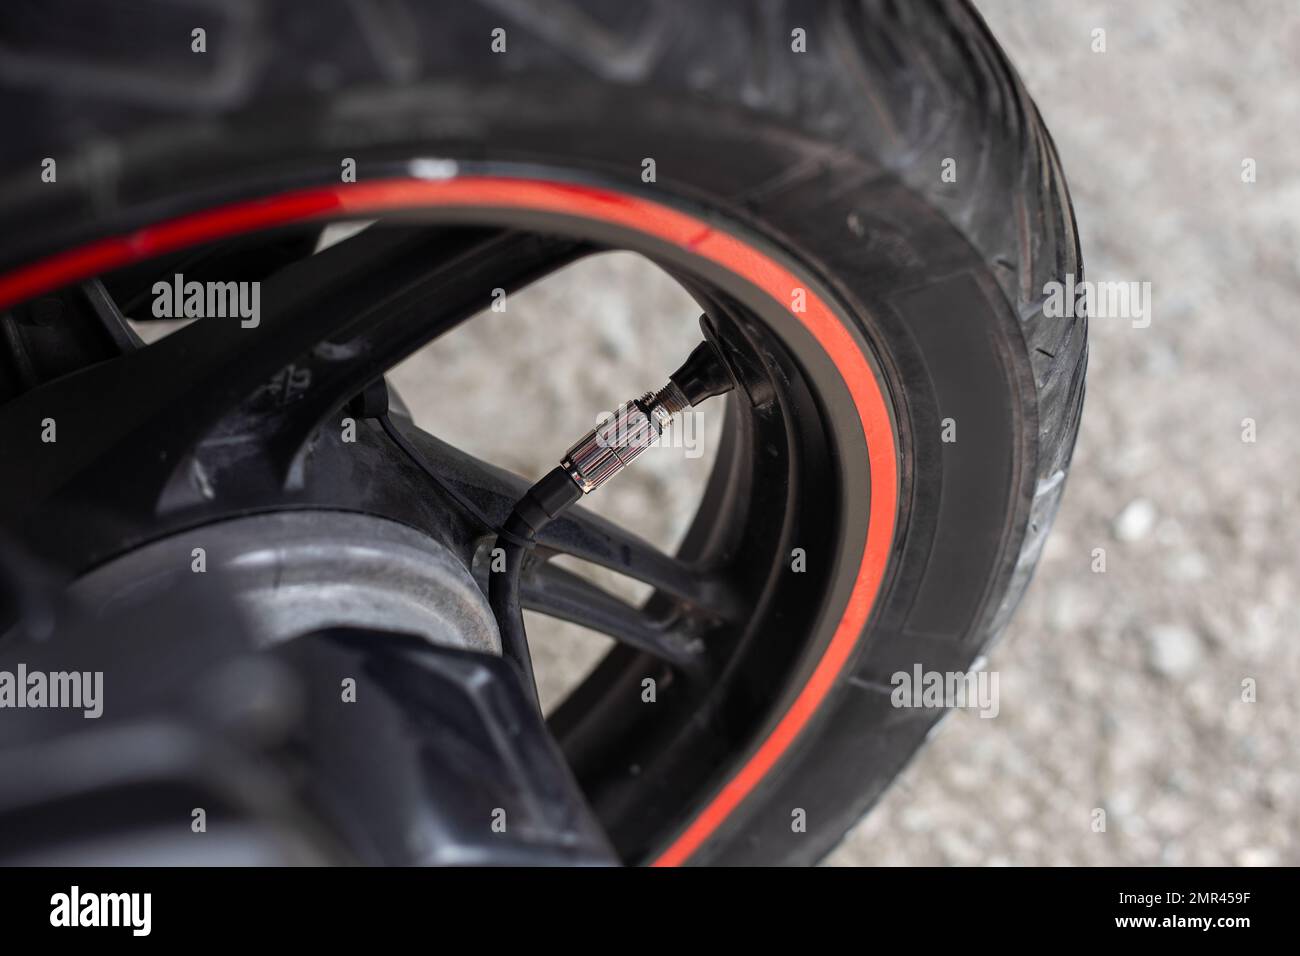 una ruota motobike con un compressore d'aria collegato per gonfiare la pressione dei pneumatici. Foto Stock